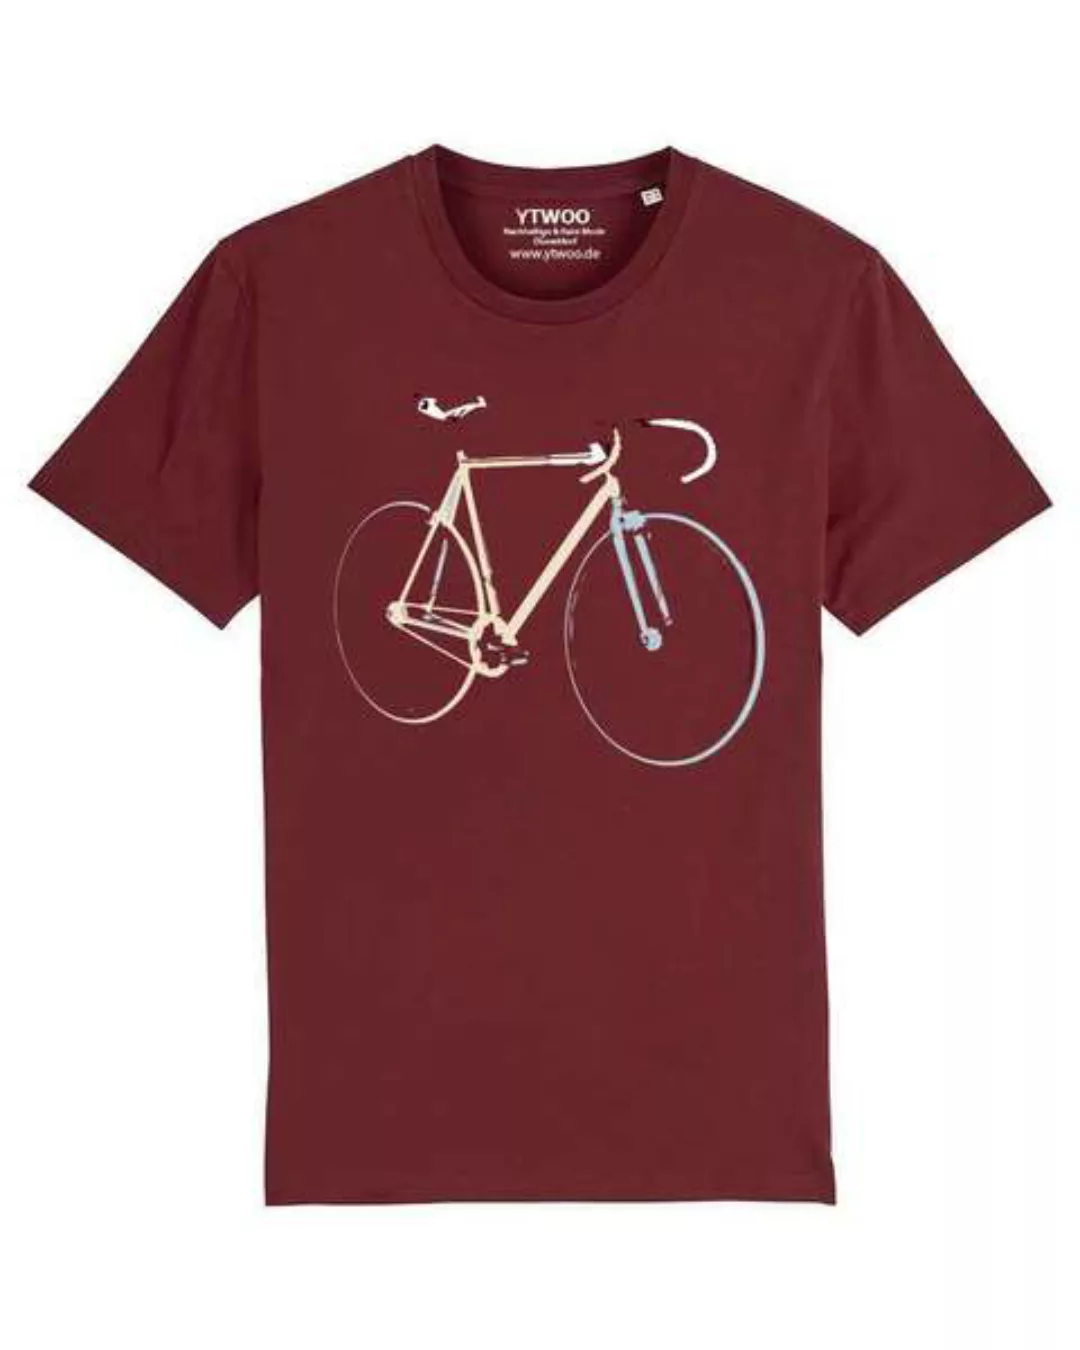 Bio T-shirt Mit Fahrrad, Rennrad, Bike, Rad Als Motiv. günstig online kaufen